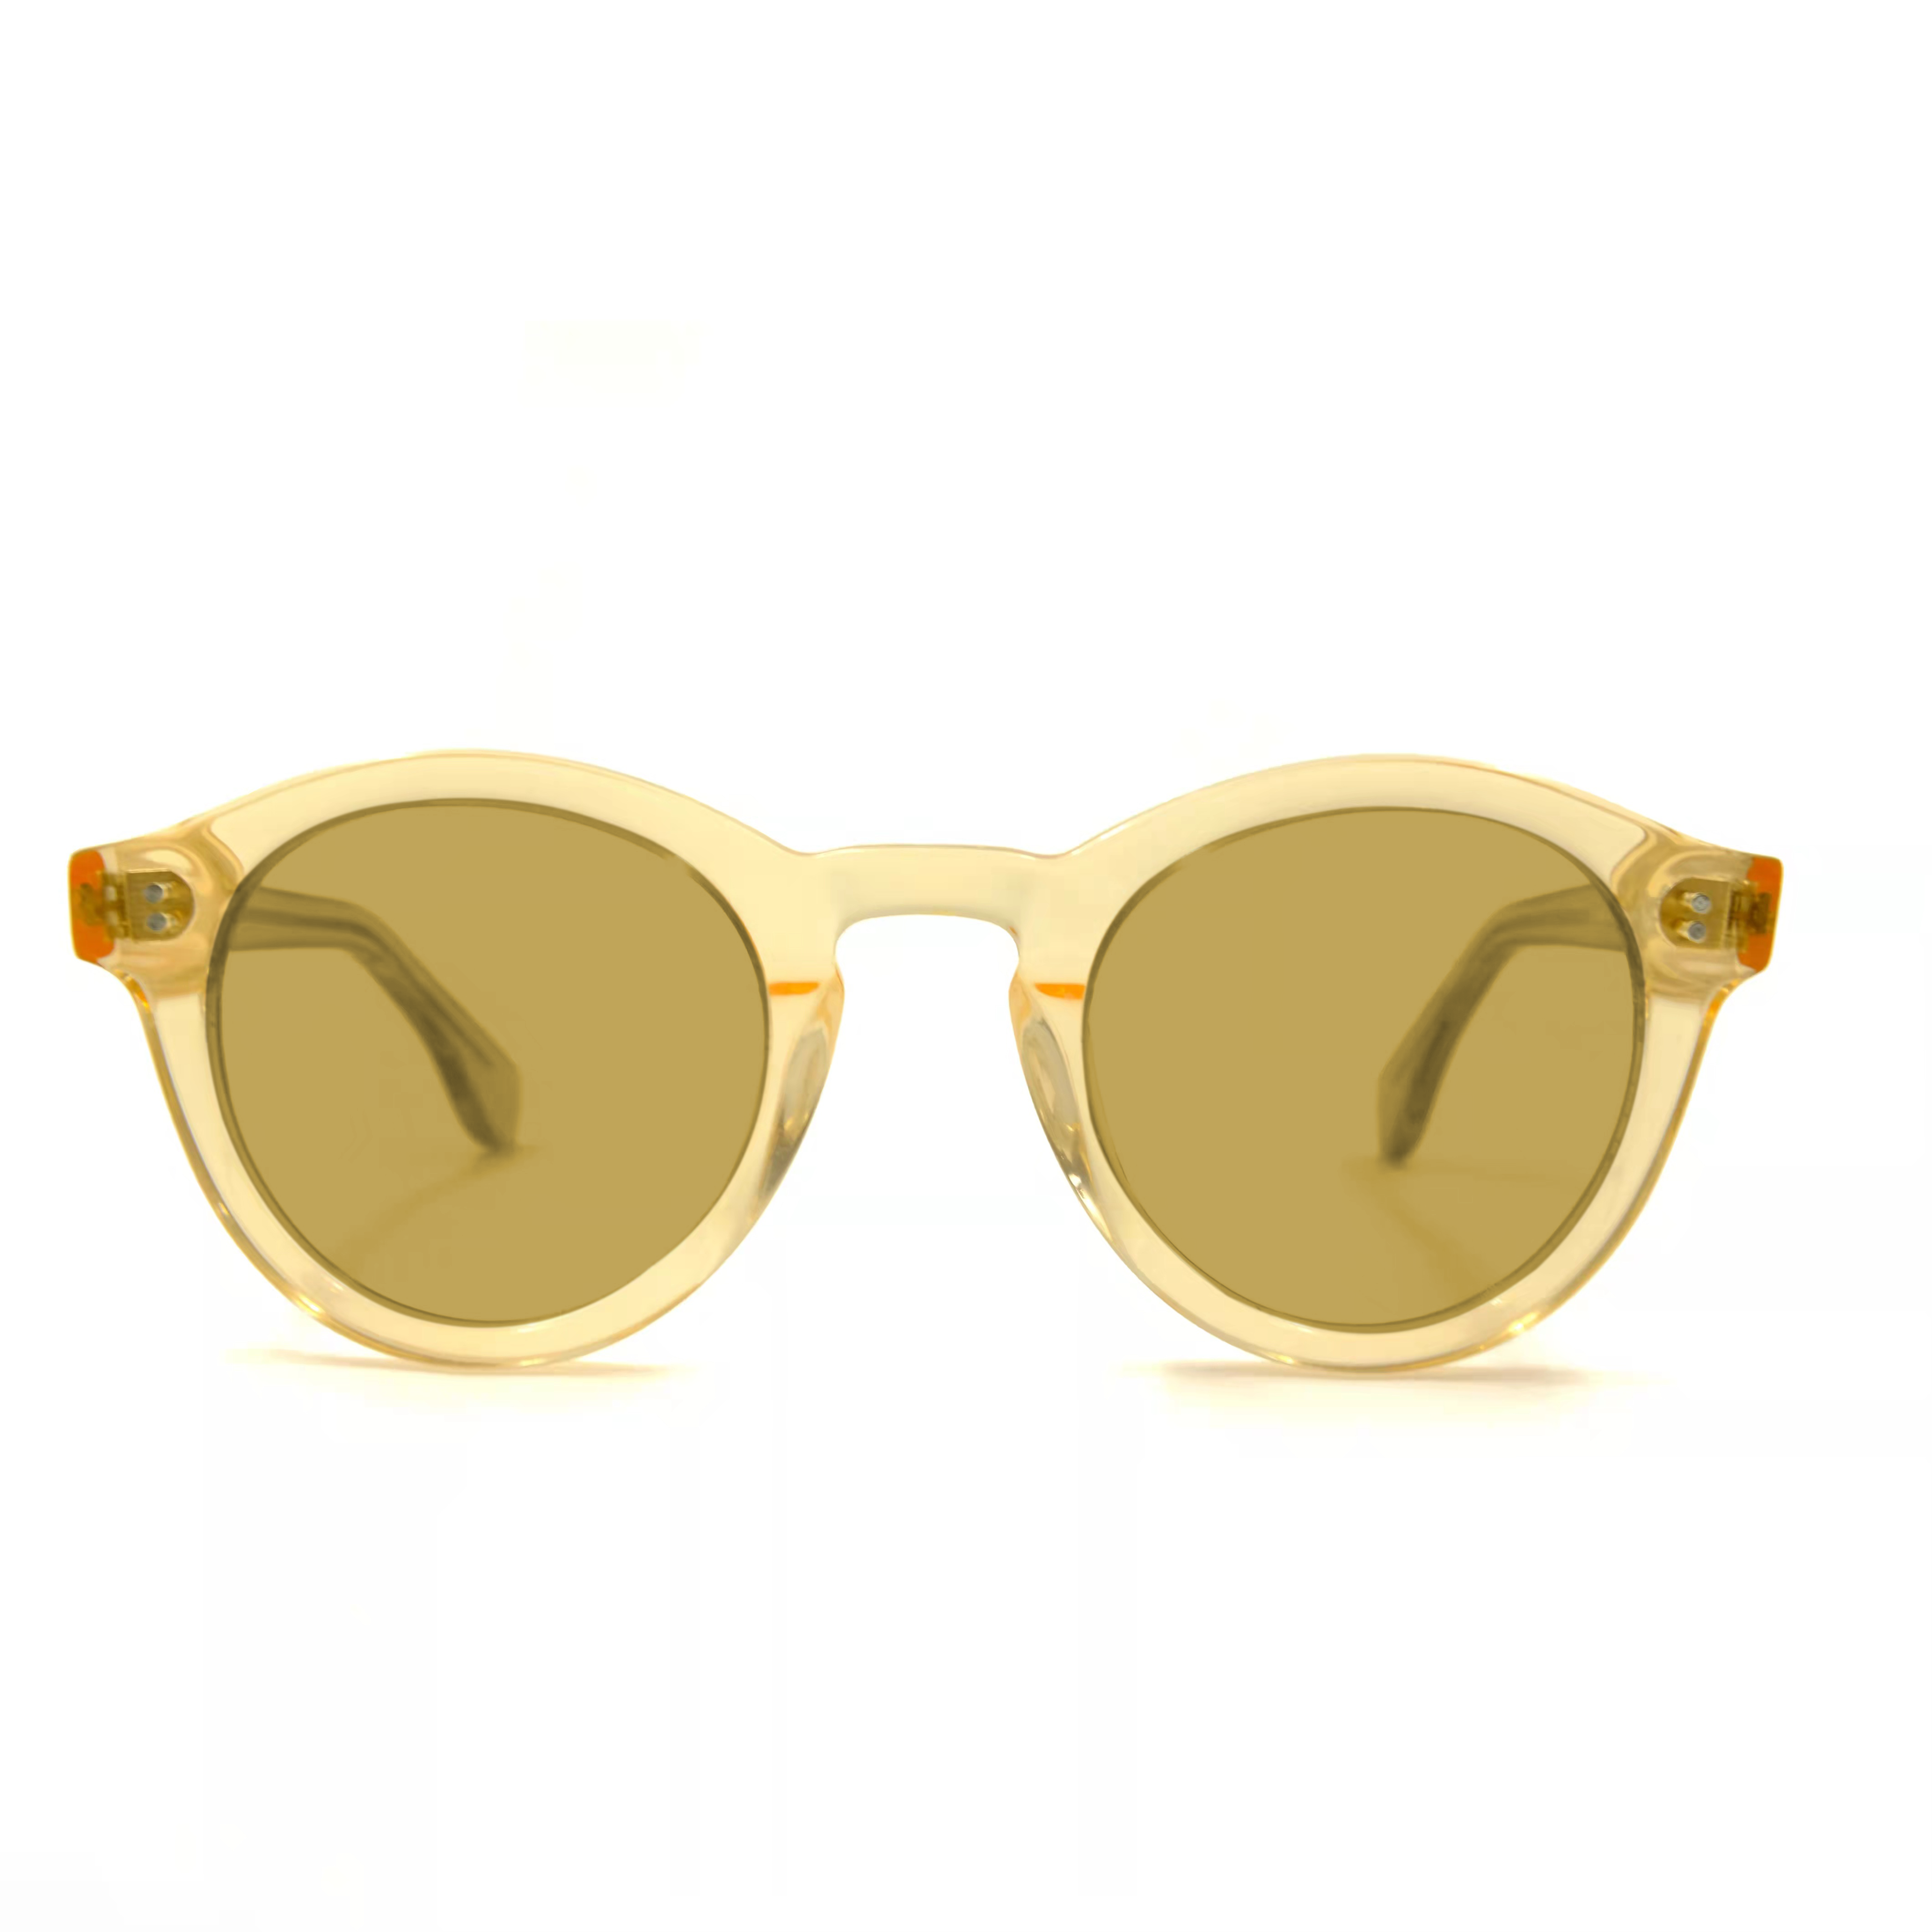 Gafas de sol de moda de acetato amarillo transparente vintage Fabricantes de anteojos a medida personalizados